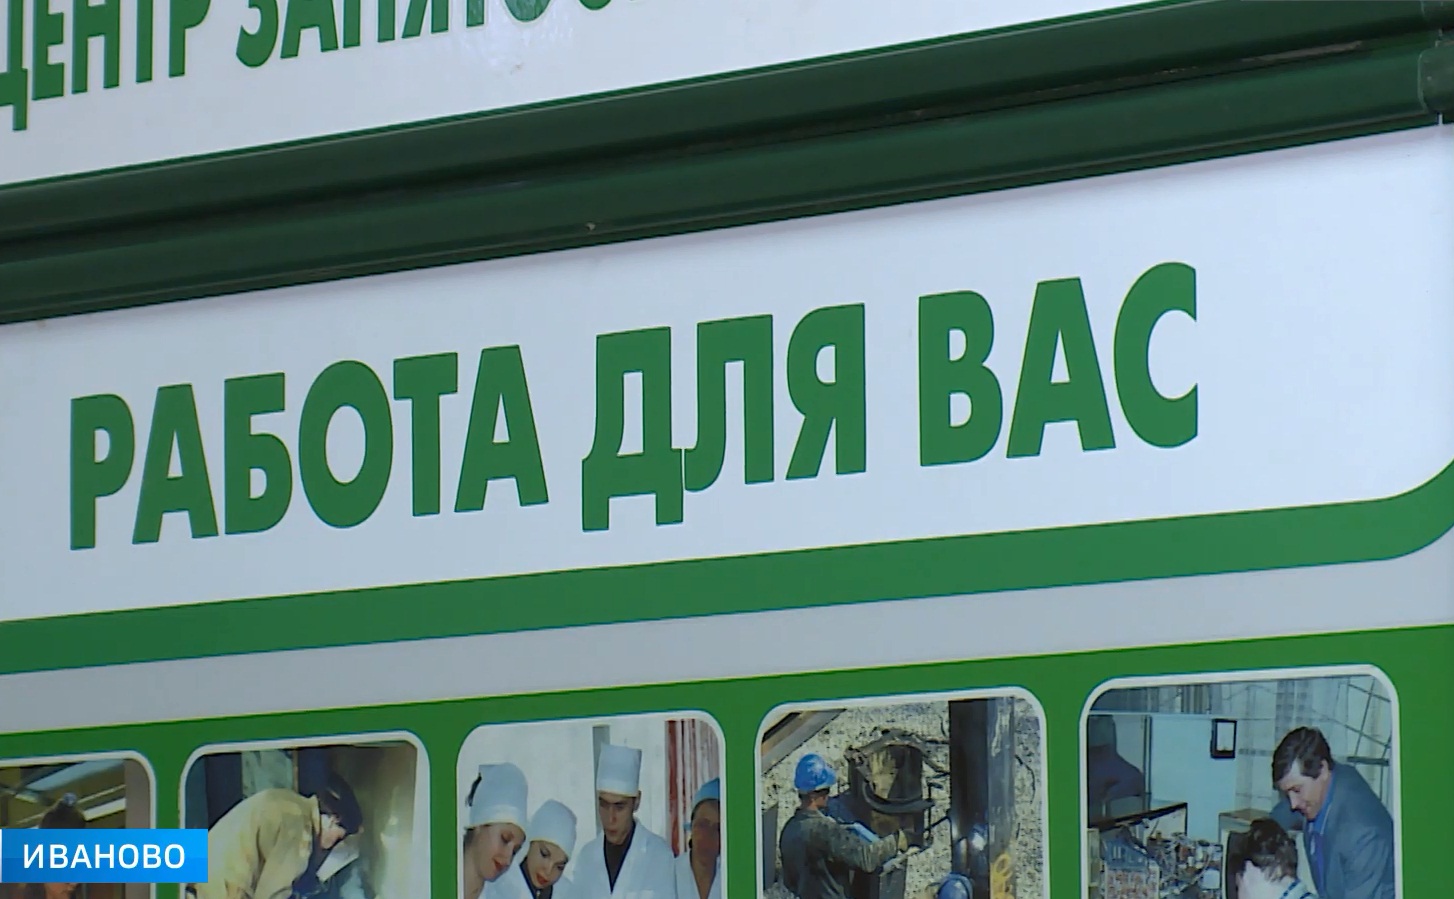 Кадровые специалисты оценили возможные изменения на рынке труда Ивановской области